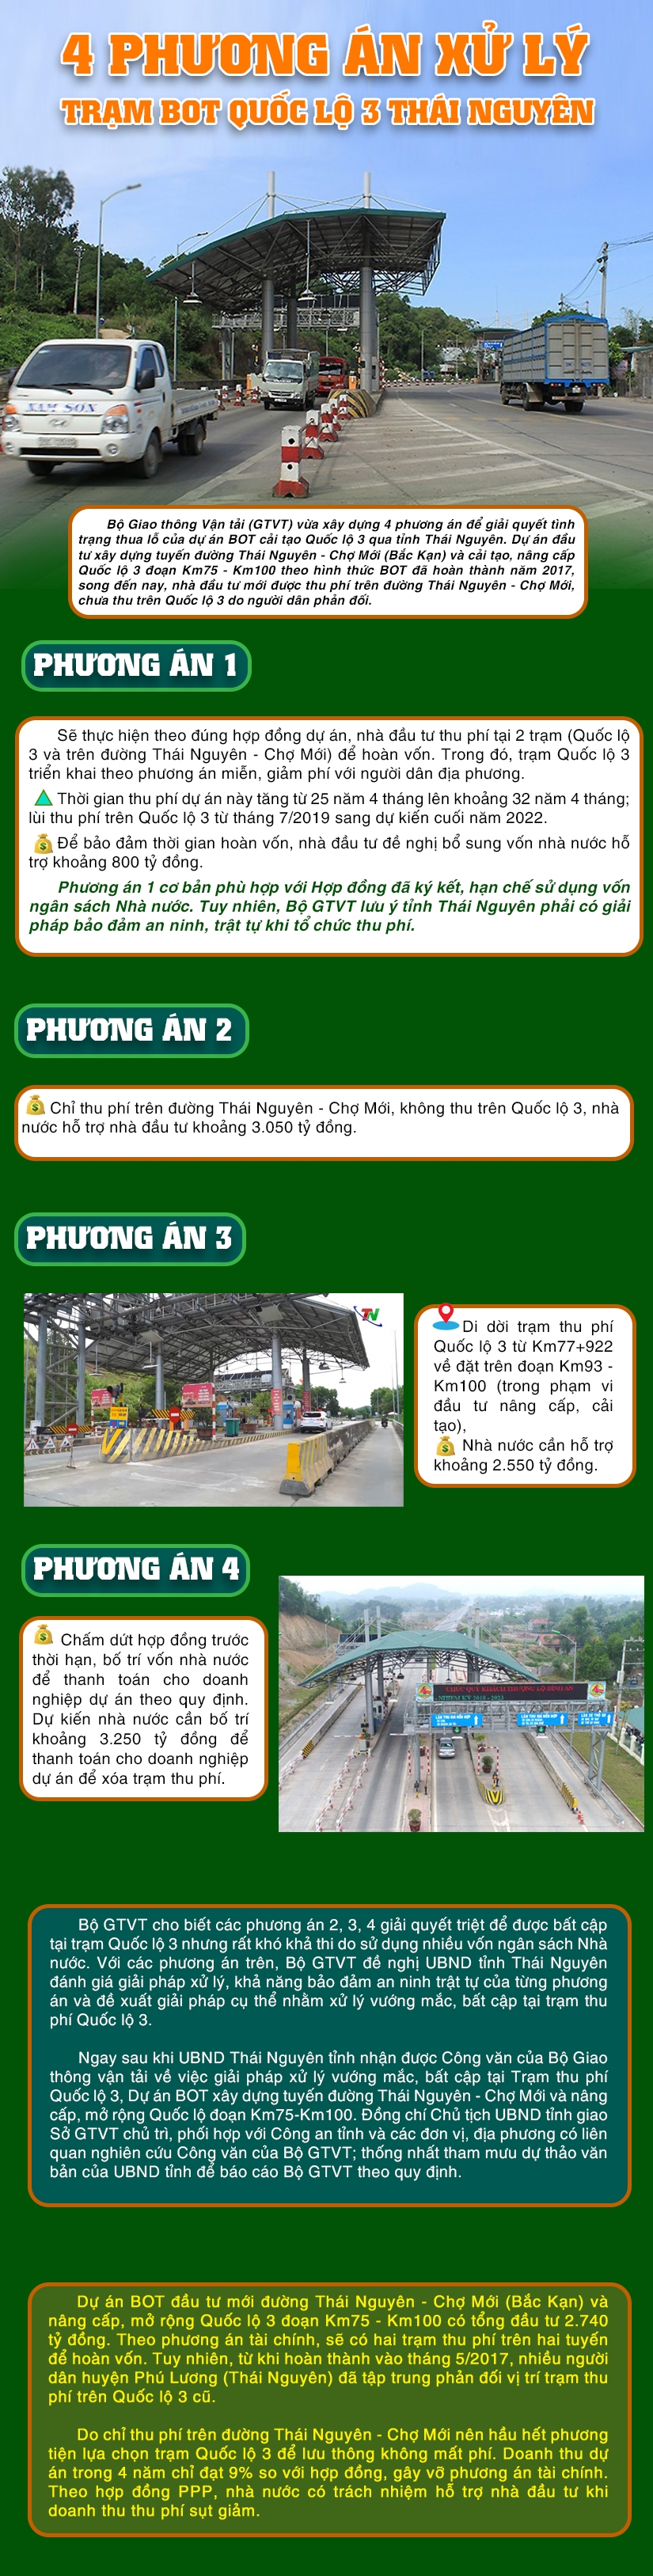 [Infographic] 4 phương án xử lý trạm BOT Quốc lộ 3 Thái Nguyên